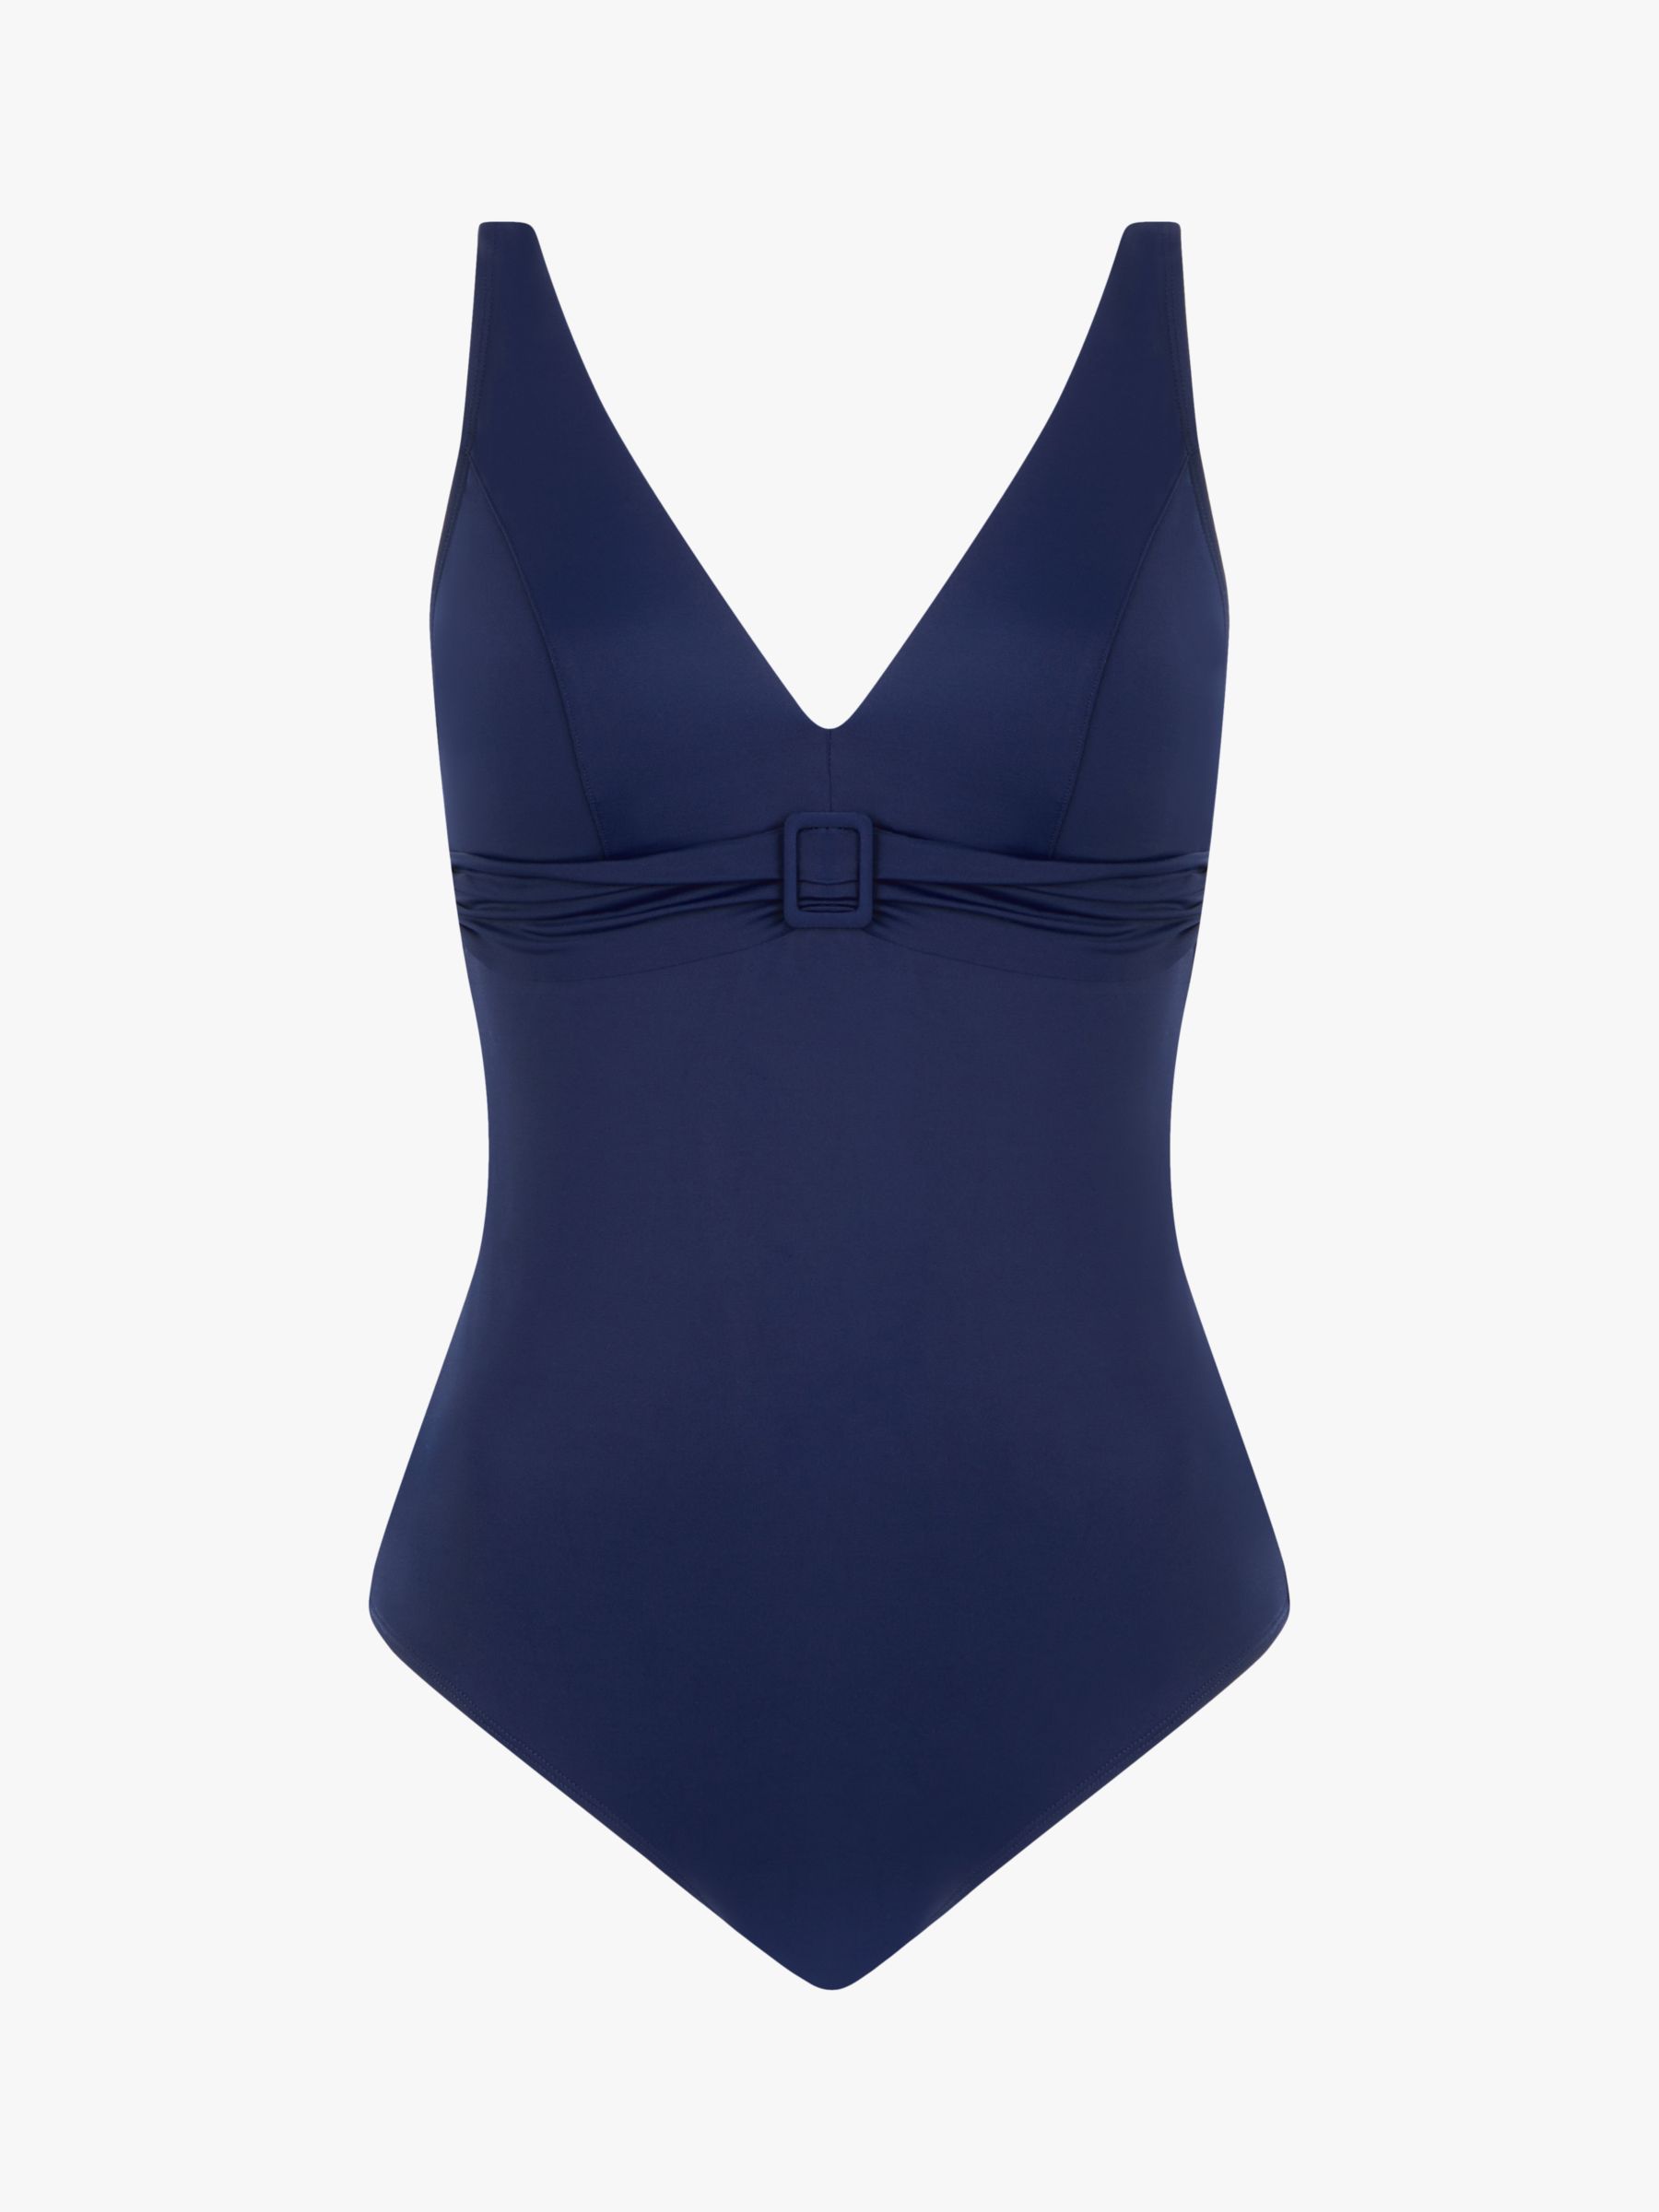 Femilet Rivero Plunge Neck Buckle Detail Swimsuit, Nocturnal Blue, S